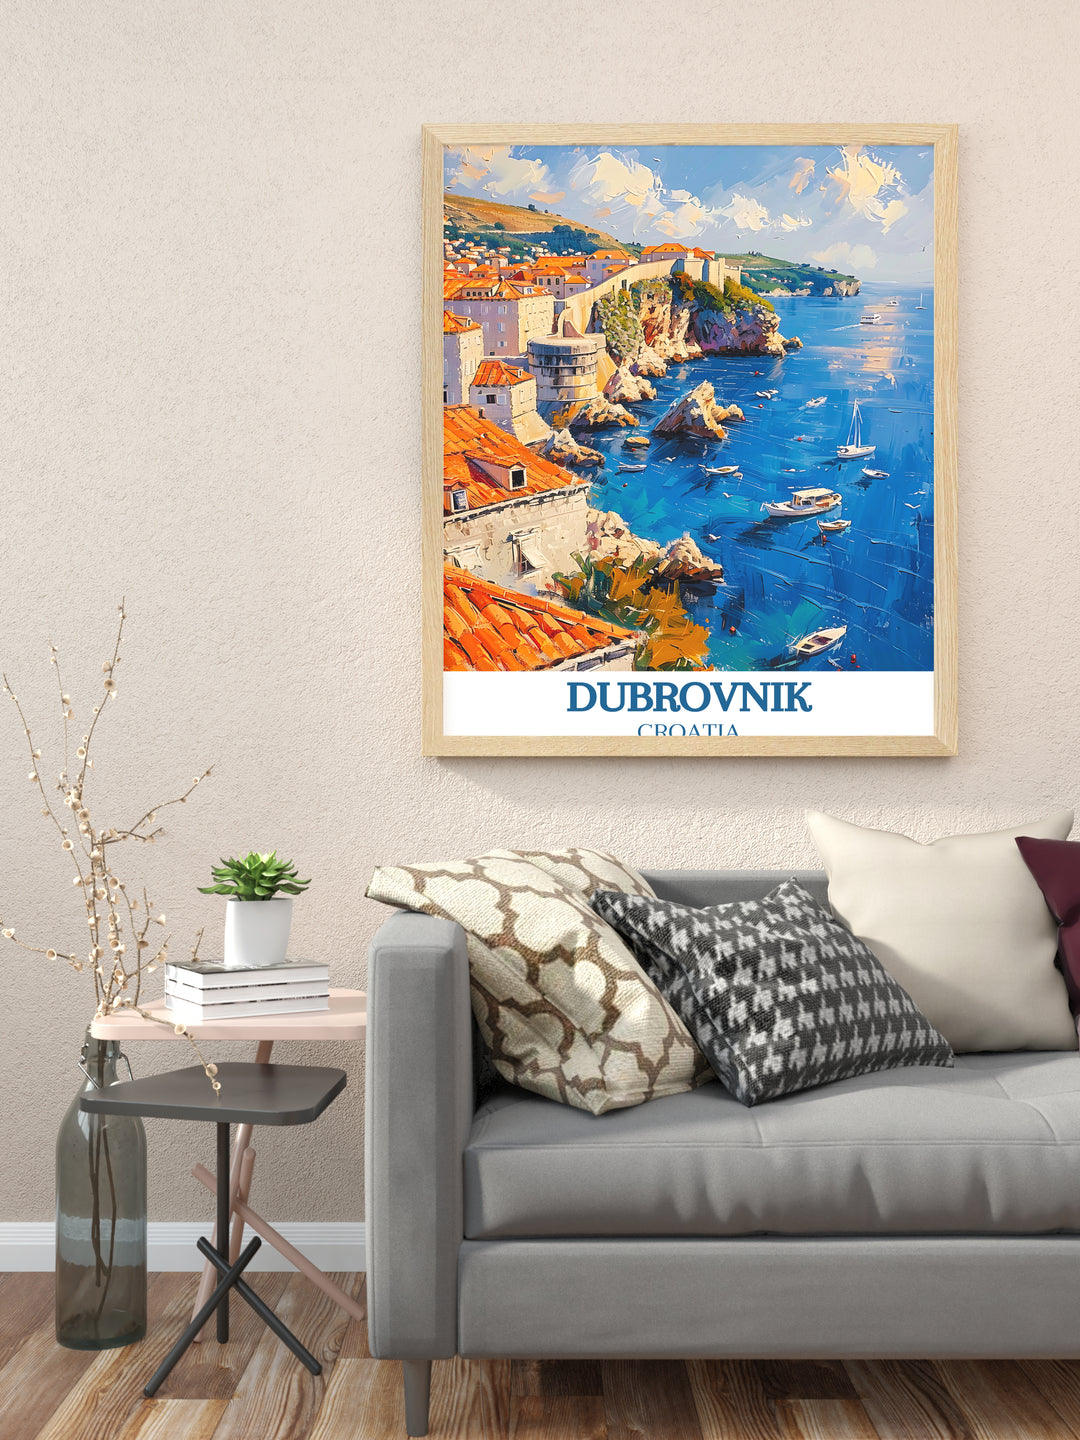 Murs de la vieille ville de Dubrovnik dans de superbes impressions de voyage – Affiches de voyage captivantes en Croatie pour vos murs